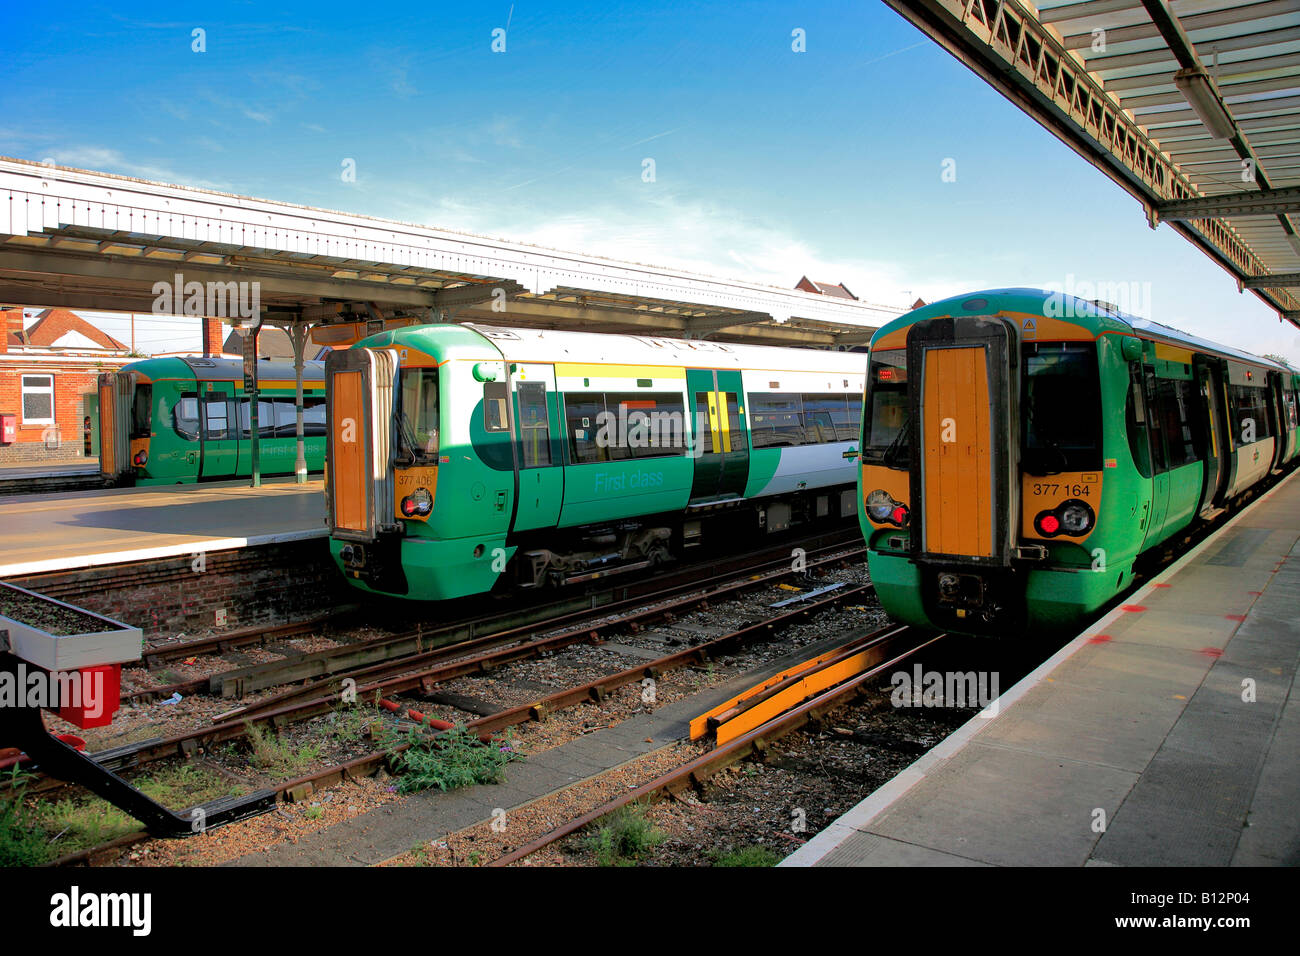 I treni del Sud 377161 377406 377 161 Bognor Station Sussex England Regno Unito Regno Unito Foto Stock